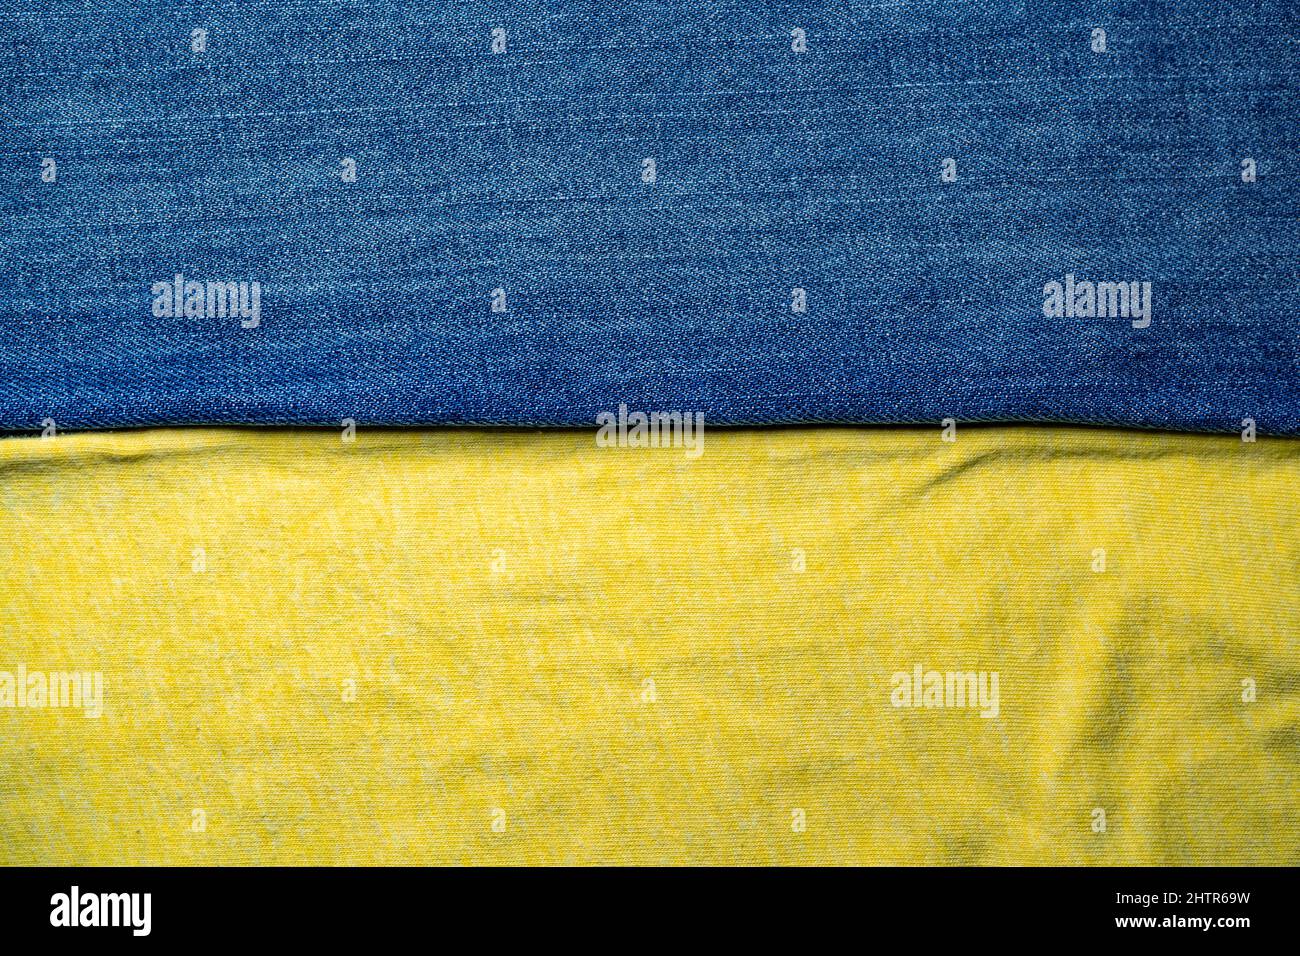 Bandiera Ucraina di jeans blu e cotone giallo Foto Stock